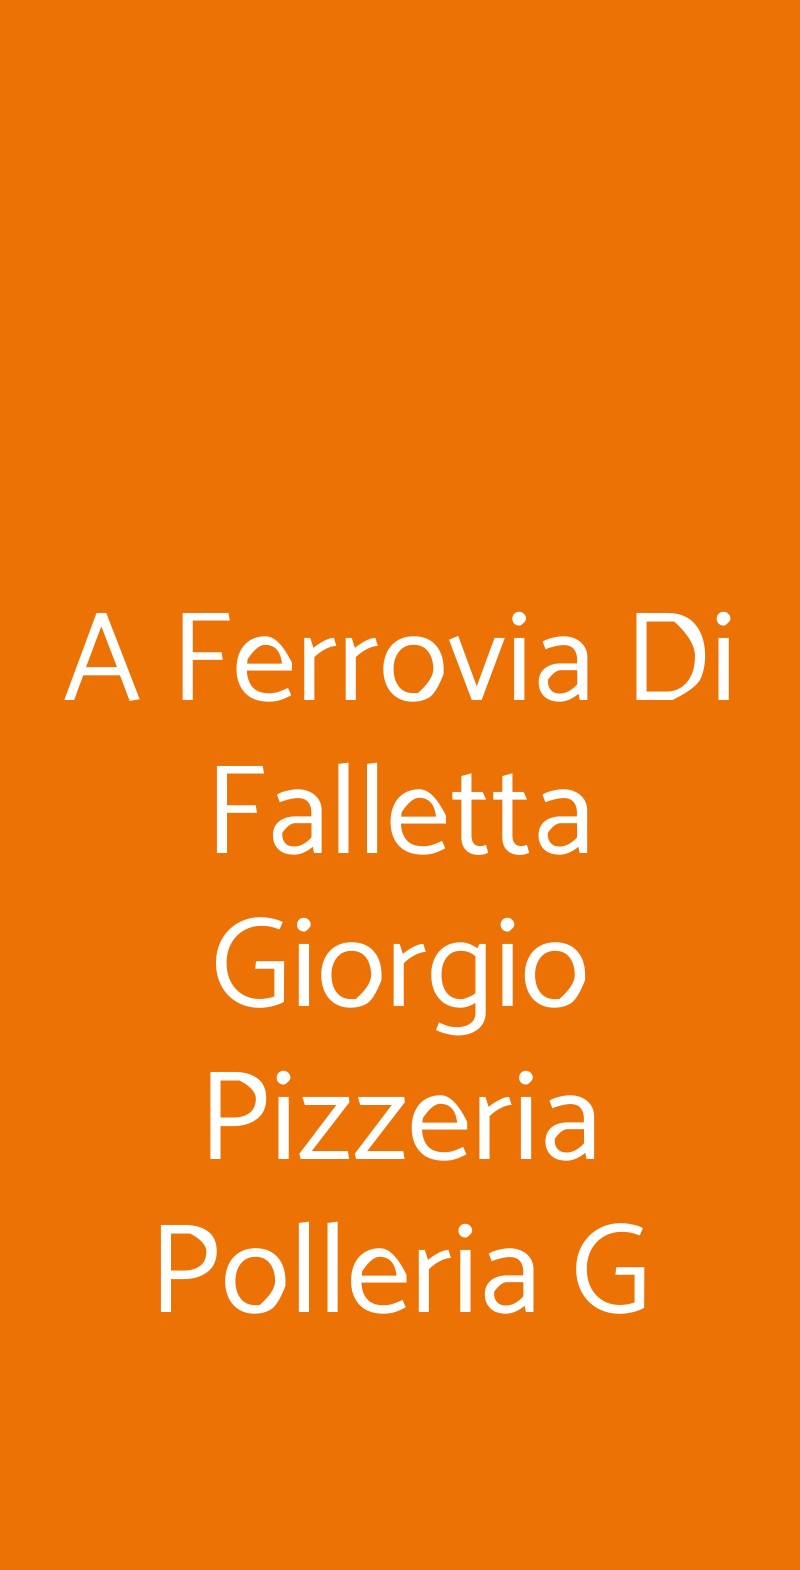 A Ferrovia Di Falletta Giorgio Pizzeria Polleria G Villabate menù 1 pagina